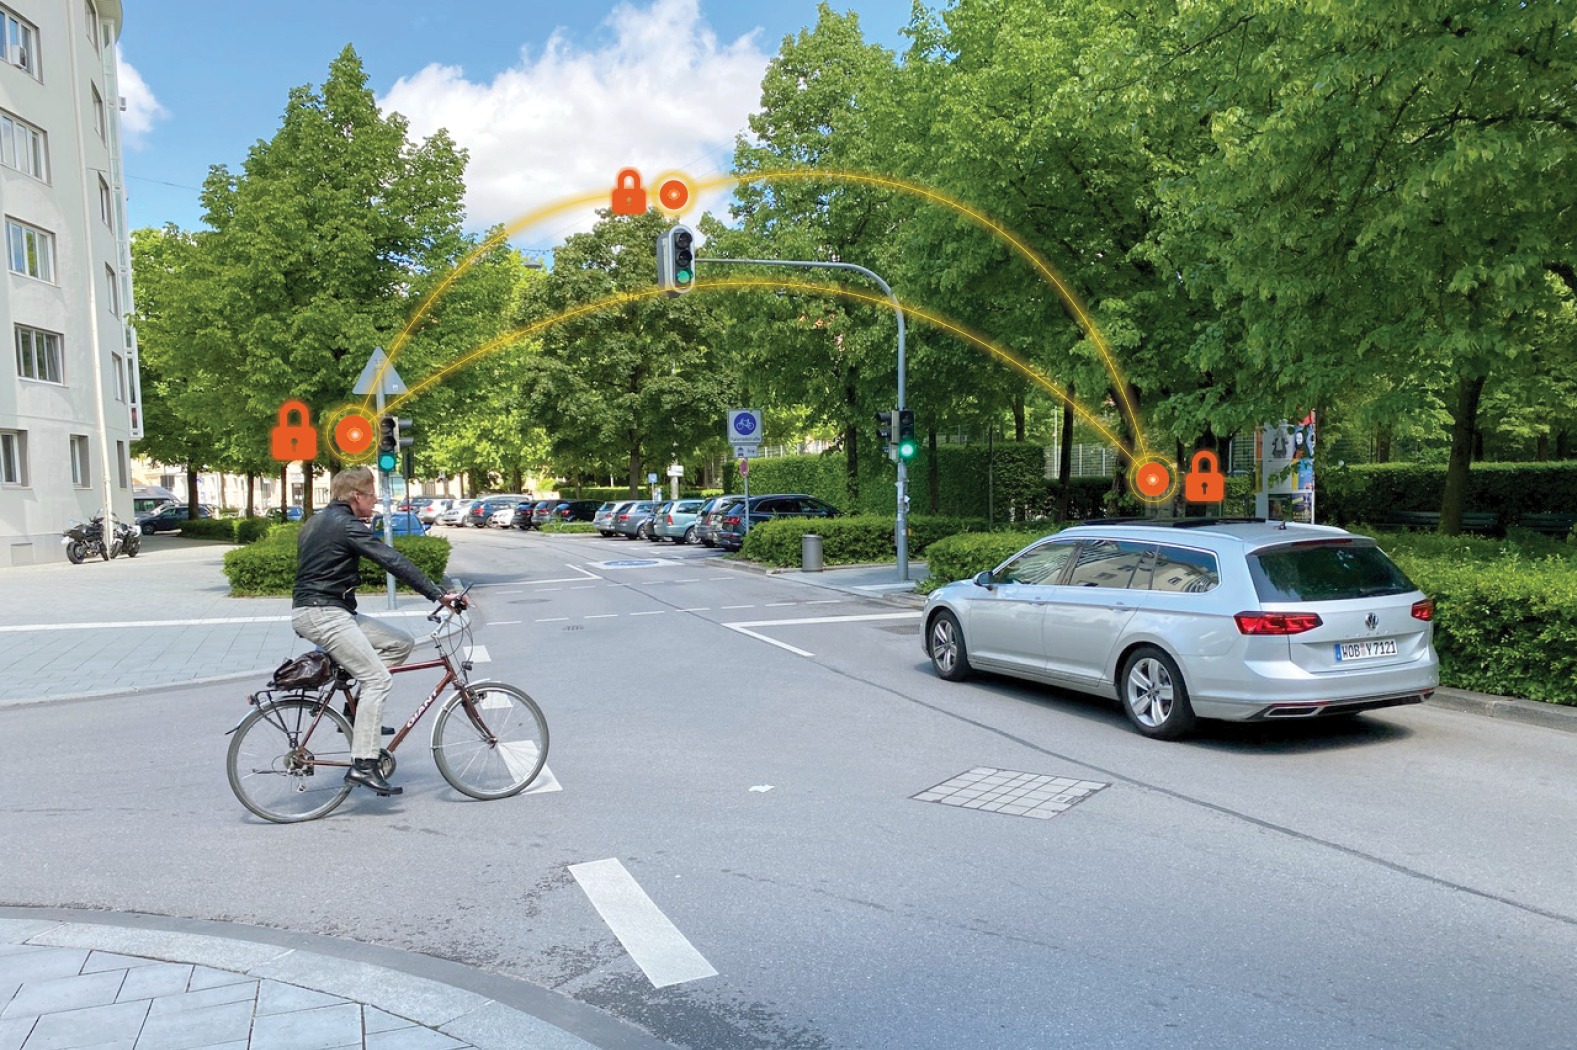 אוטוטוקס תשיק במינכן פלטפורמה למניעת תאונות בצמתים של אופניים וקורקינטים המכונה זוז (ZOOZ). צילום יחצ